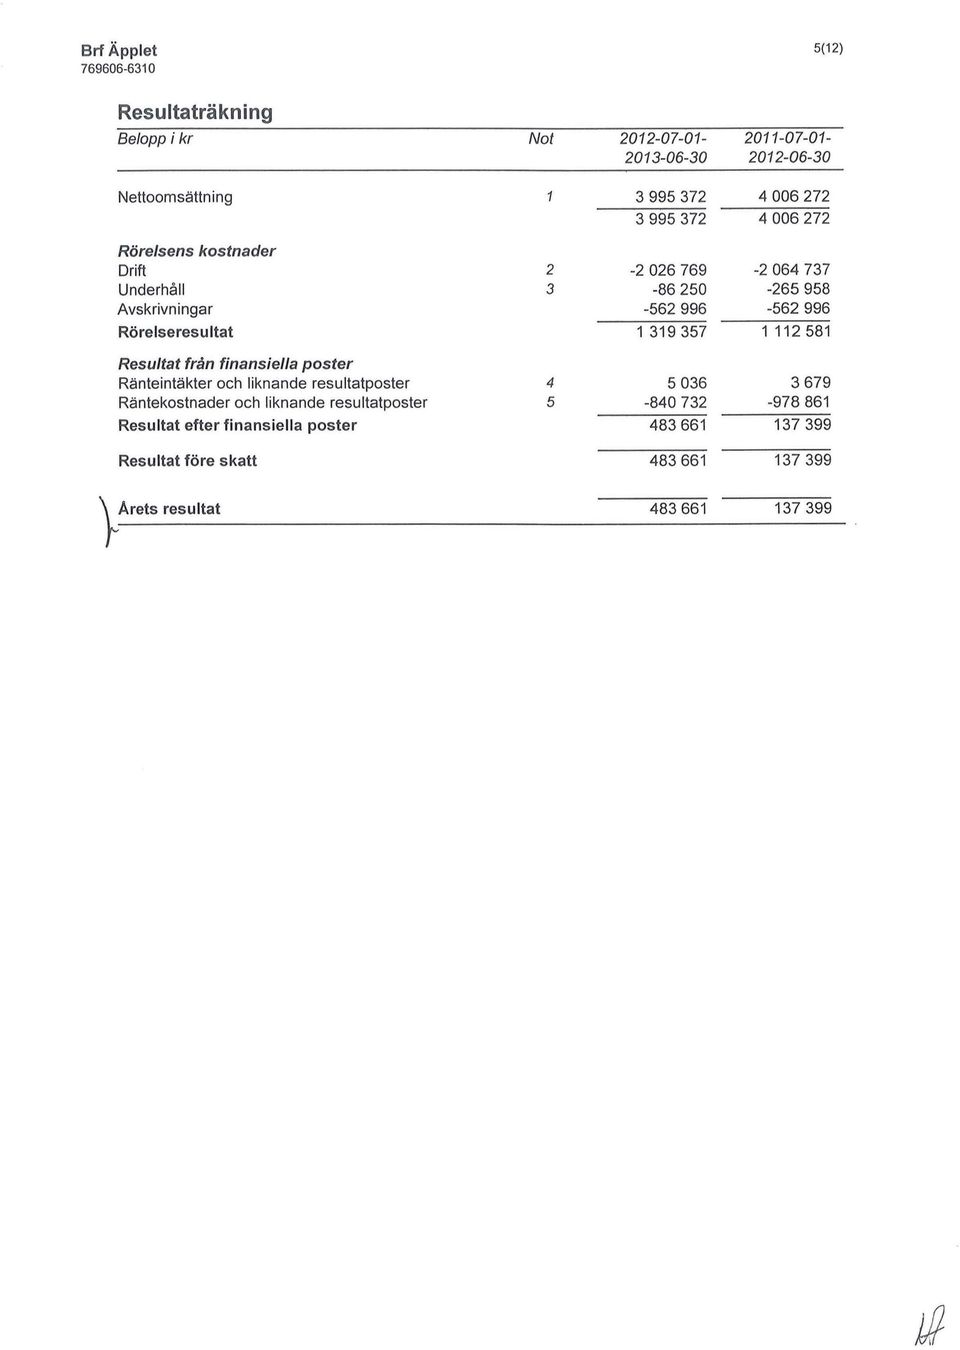 319 357 1 112 581 Resultat från finansiella poster Ränteintäkter och liknande resultatposter 4 5 036 3 679 Räntekostnader och liknande